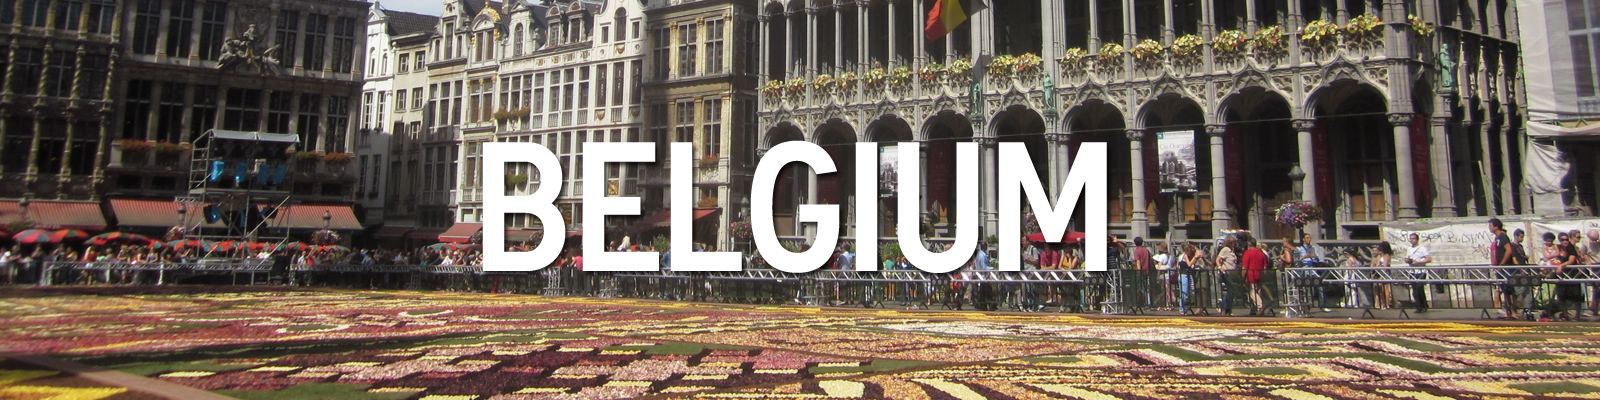 Belgium Travel